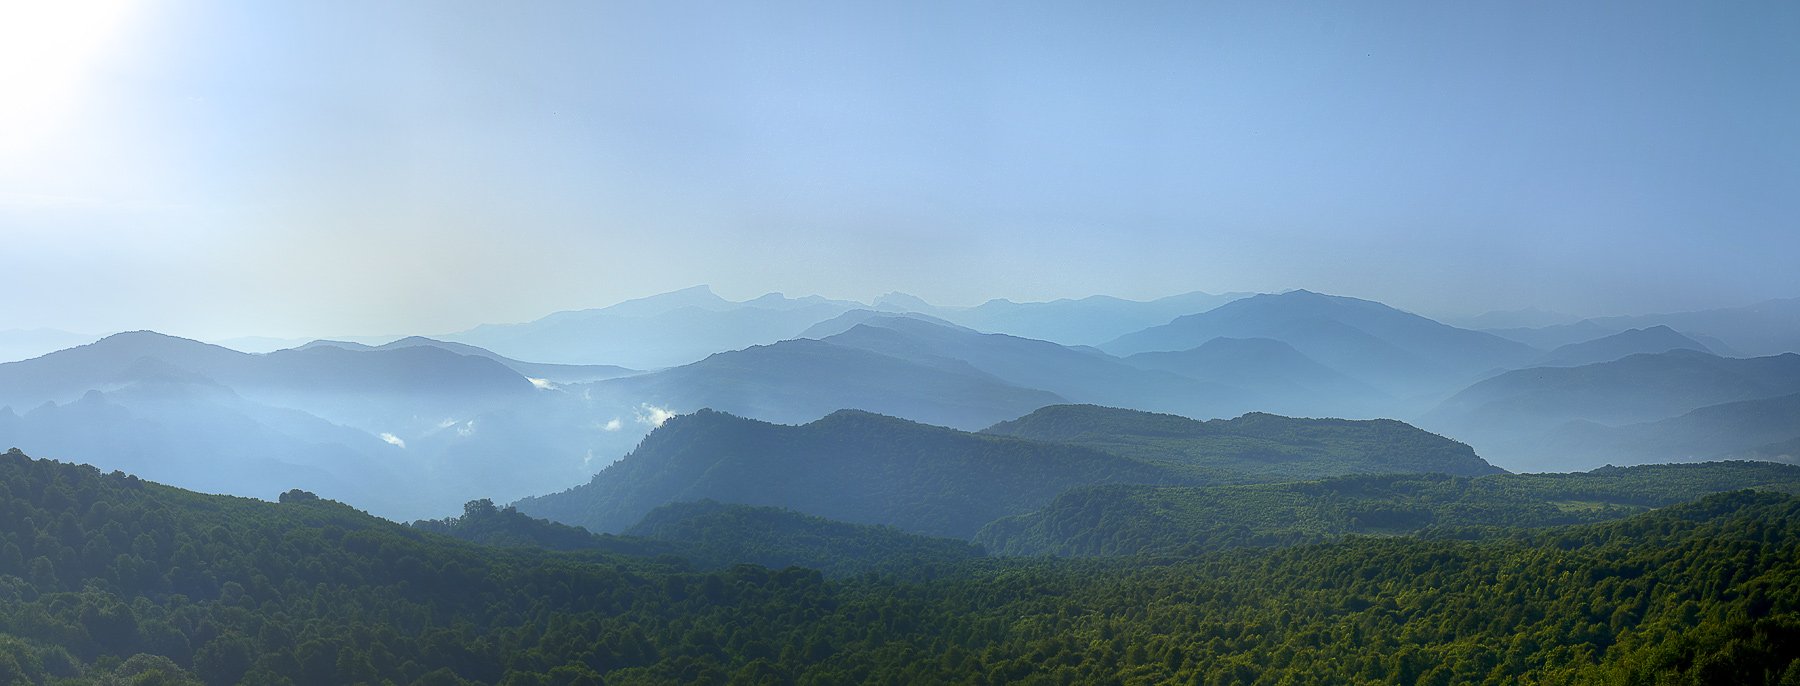 горы, дымка, утро, кавказ, голубые дали, тхач, панорама, Вадим de-Zigner Малышев